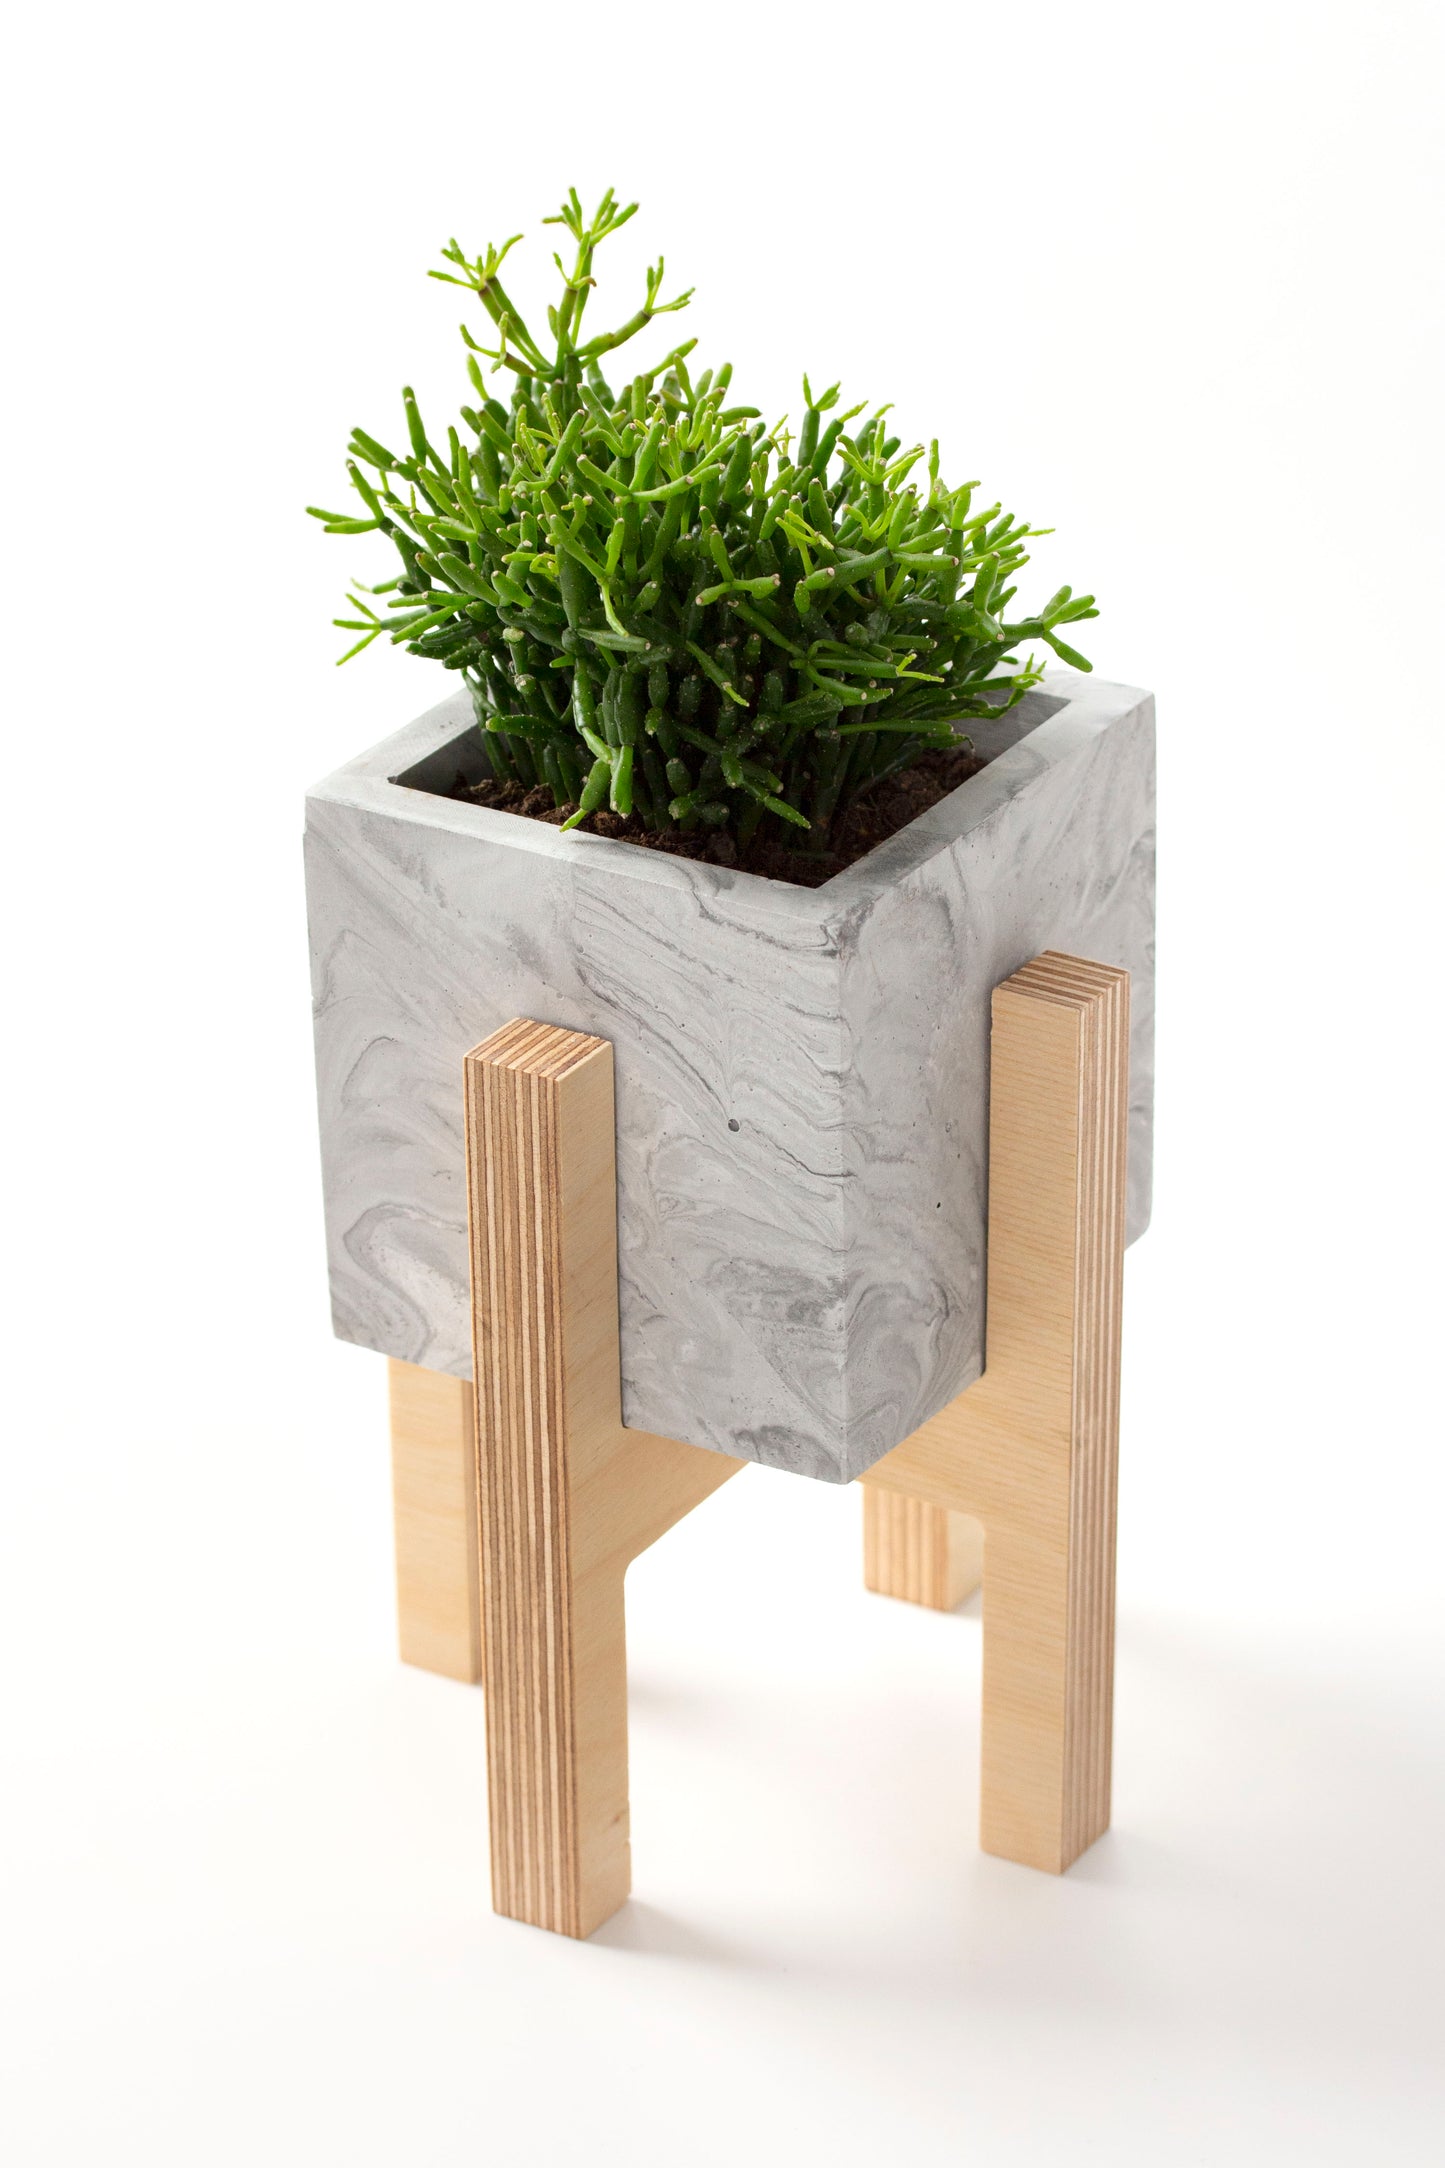 Black Concrete Flower Pot with Wooden Leg